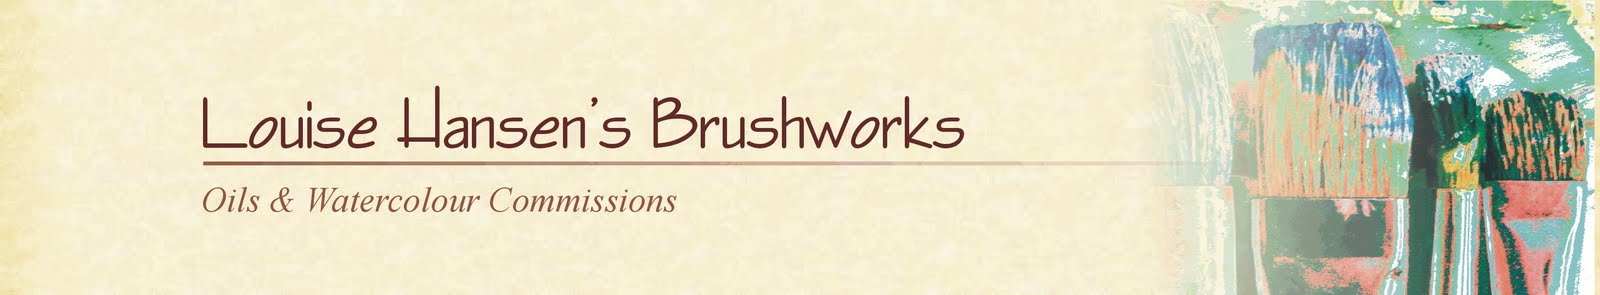 Louise Hansen's Brushworks